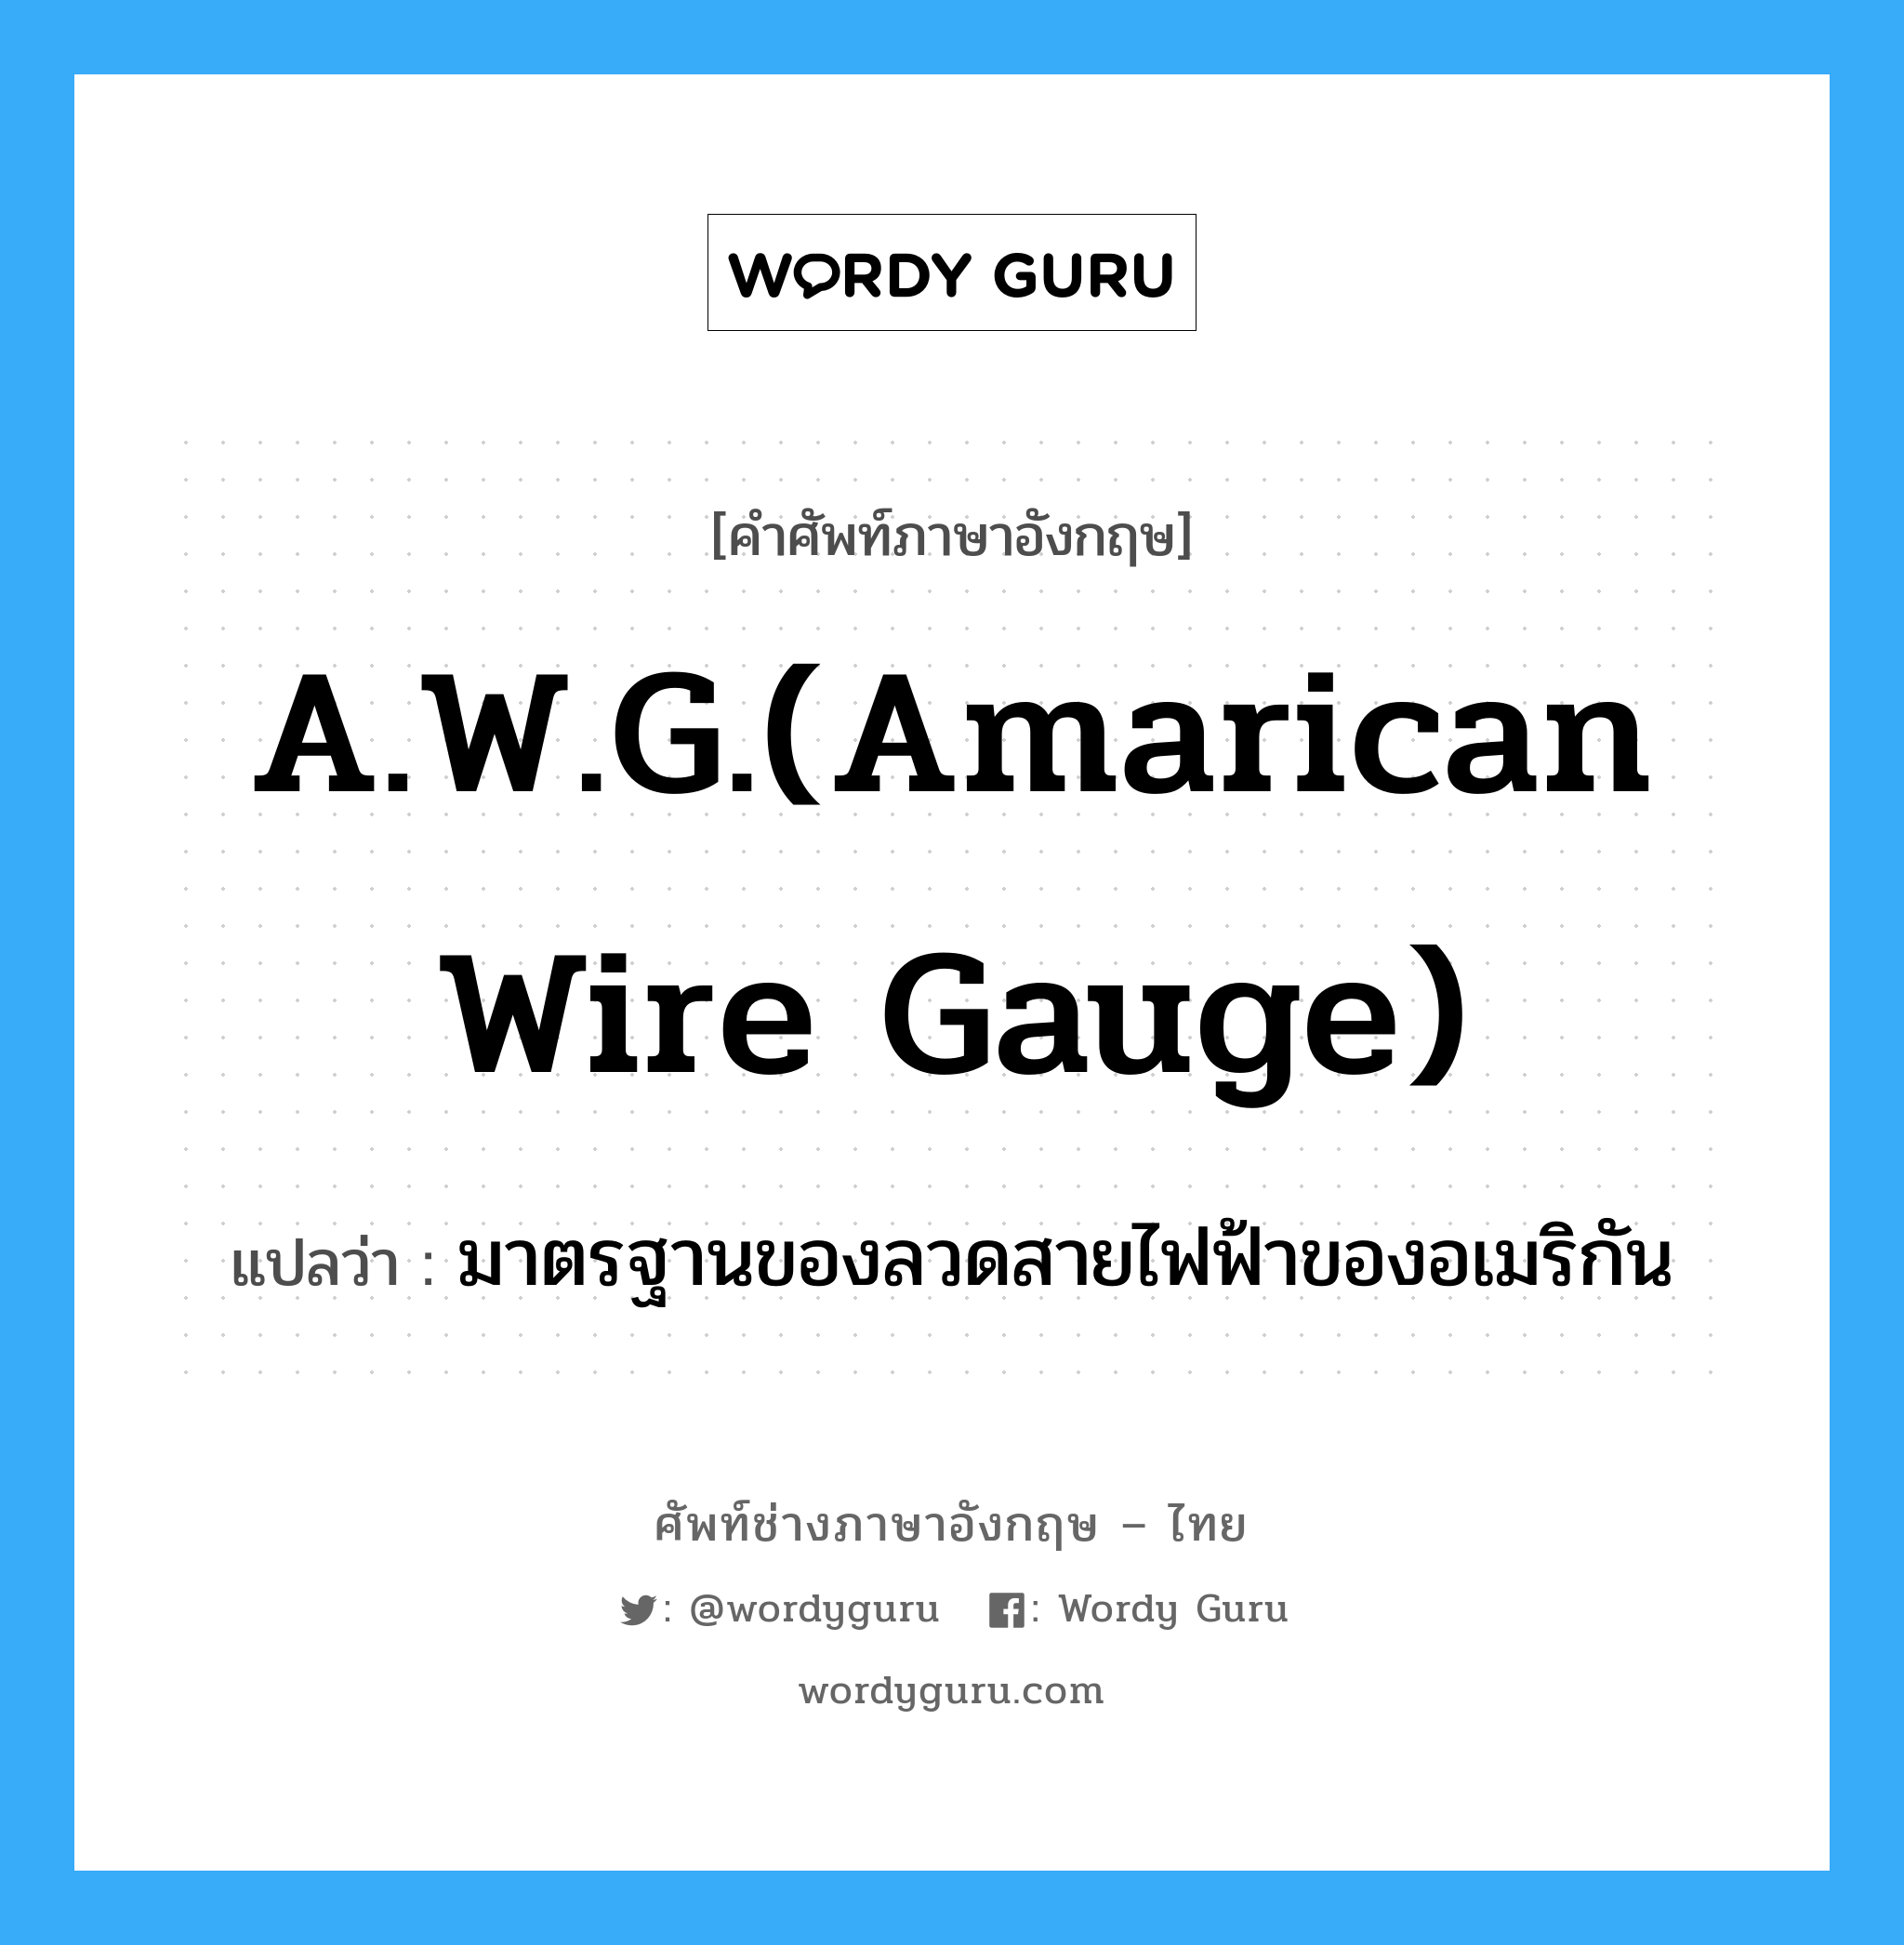 A.W.G.(Amarican wire gauge) แปลว่า?, คำศัพท์ช่างภาษาอังกฤษ - ไทย A.W.G.(Amarican wire gauge) คำศัพท์ภาษาอังกฤษ A.W.G.(Amarican wire gauge) แปลว่า มาตรฐานของลวดสายไฟฟ้าของอเมริกัน